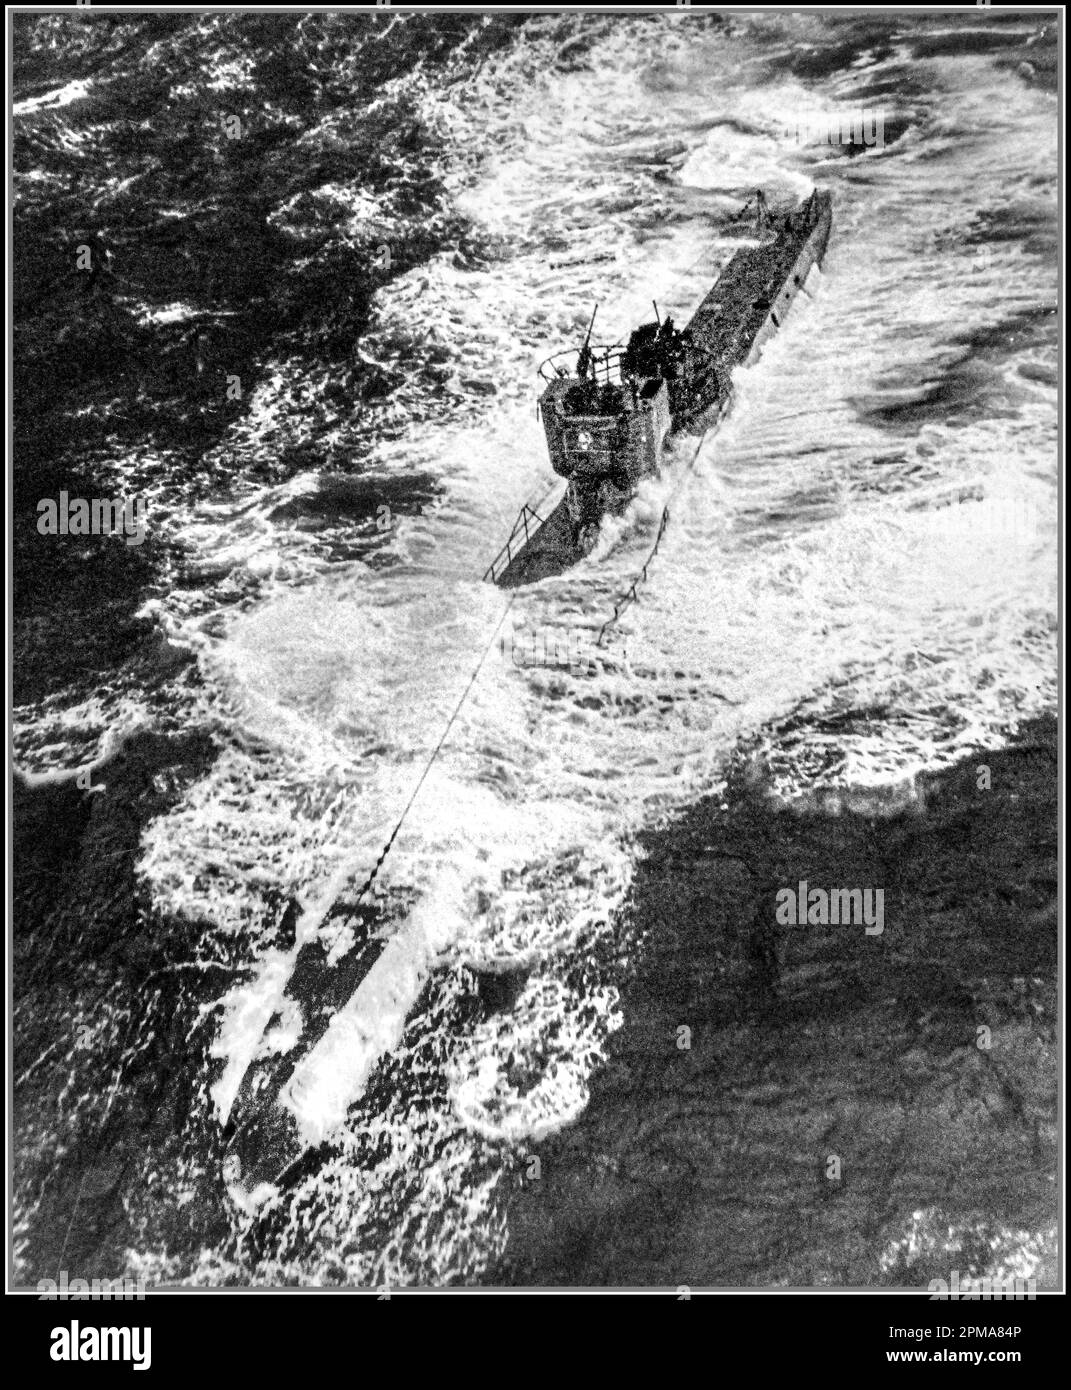 WW2 attaque sur des U-boats allemands, 1943. Attaque aérienne contre U-378, incident n° 4786, 20 octobre 1943. Le U-boat a été coulé par Fido Homing torpille et des charges de profondeur des avions Avenger et Wildcat du composite Squadron treize (VC-13) basé sur USS Core (CVE-13).World War II second World War Mid-Atlantic Banque D'Images